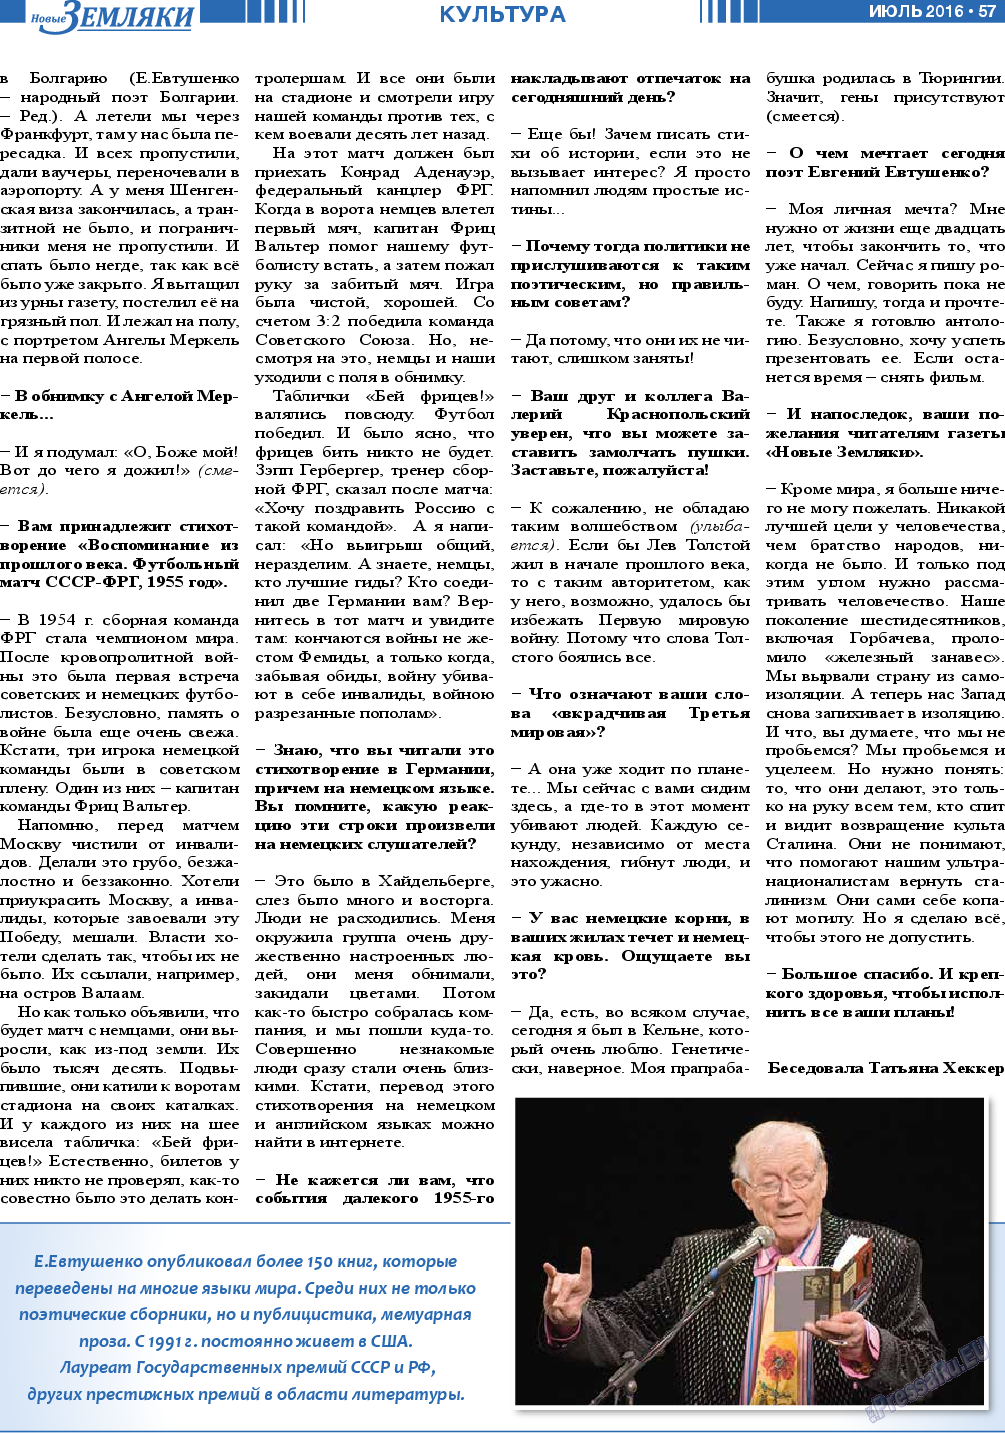 Новые Земляки (газета). 2016 год, номер 7, стр. 57